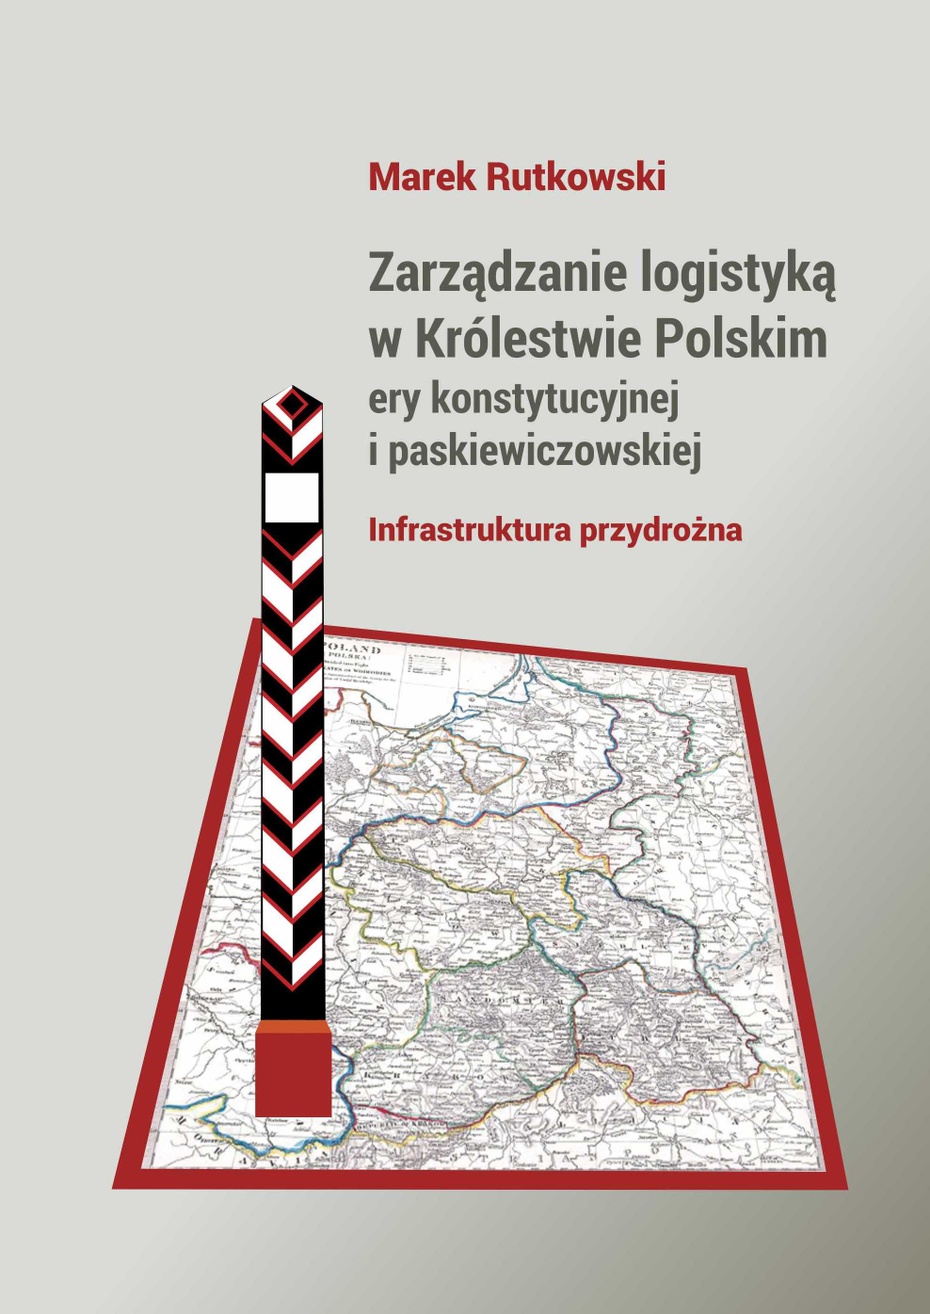 Zarządanie logistyką  w Królestwie Polskim epoki kontrytucyjnej i paskiewiczowskiej. Infrastruktura przydrożna.